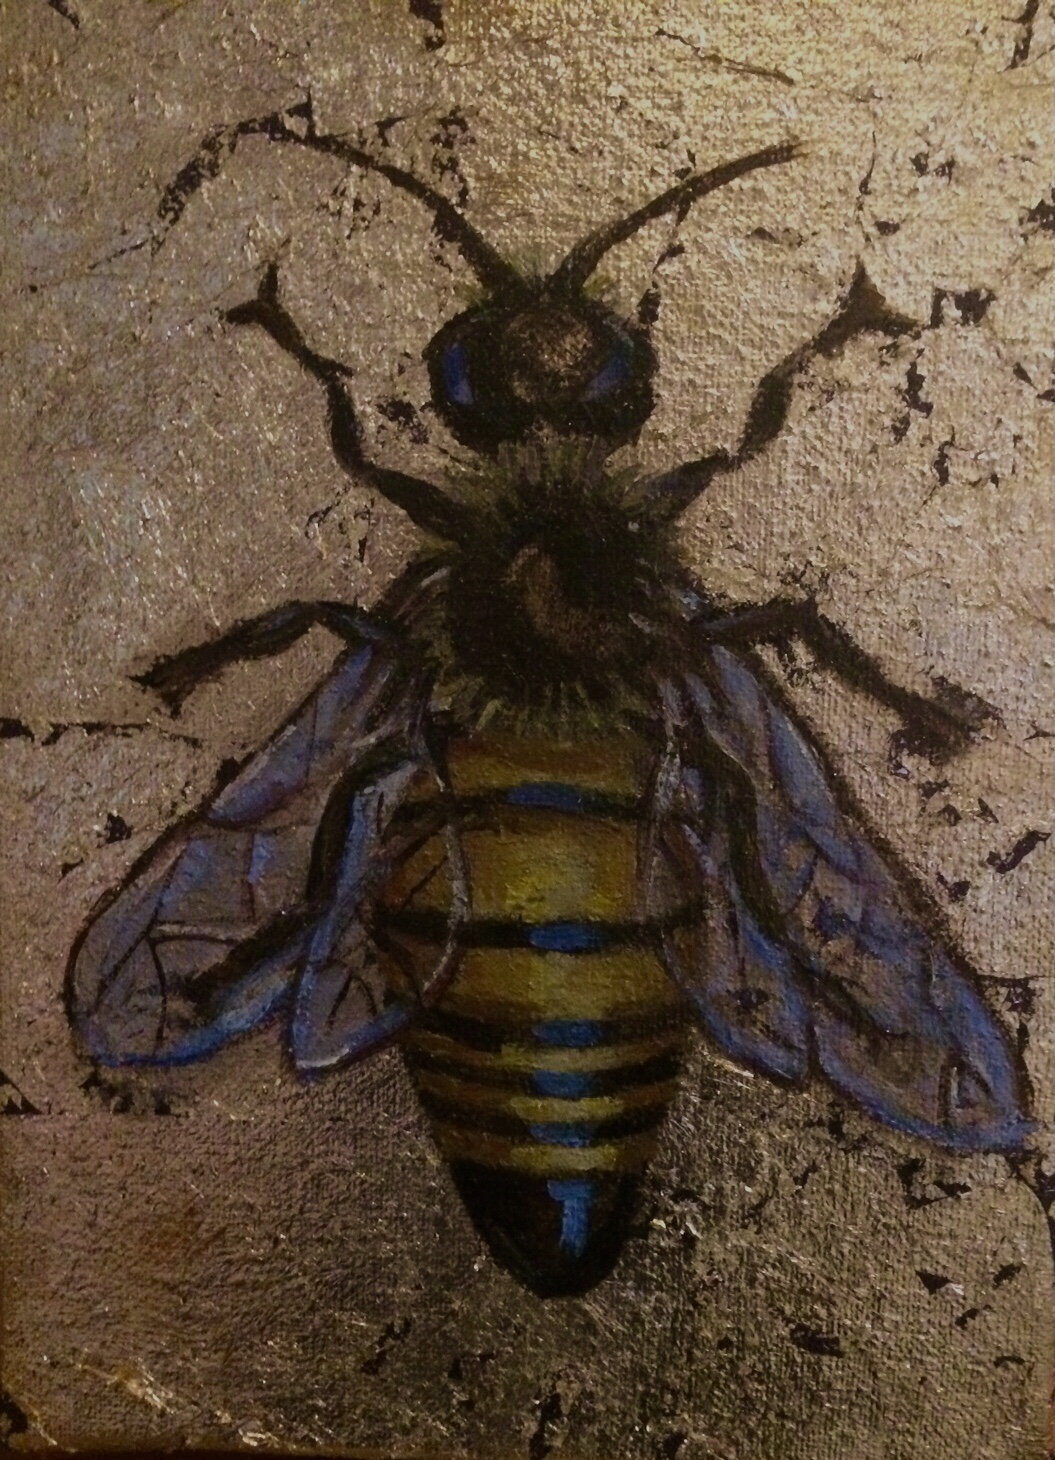 Queen bee in flight